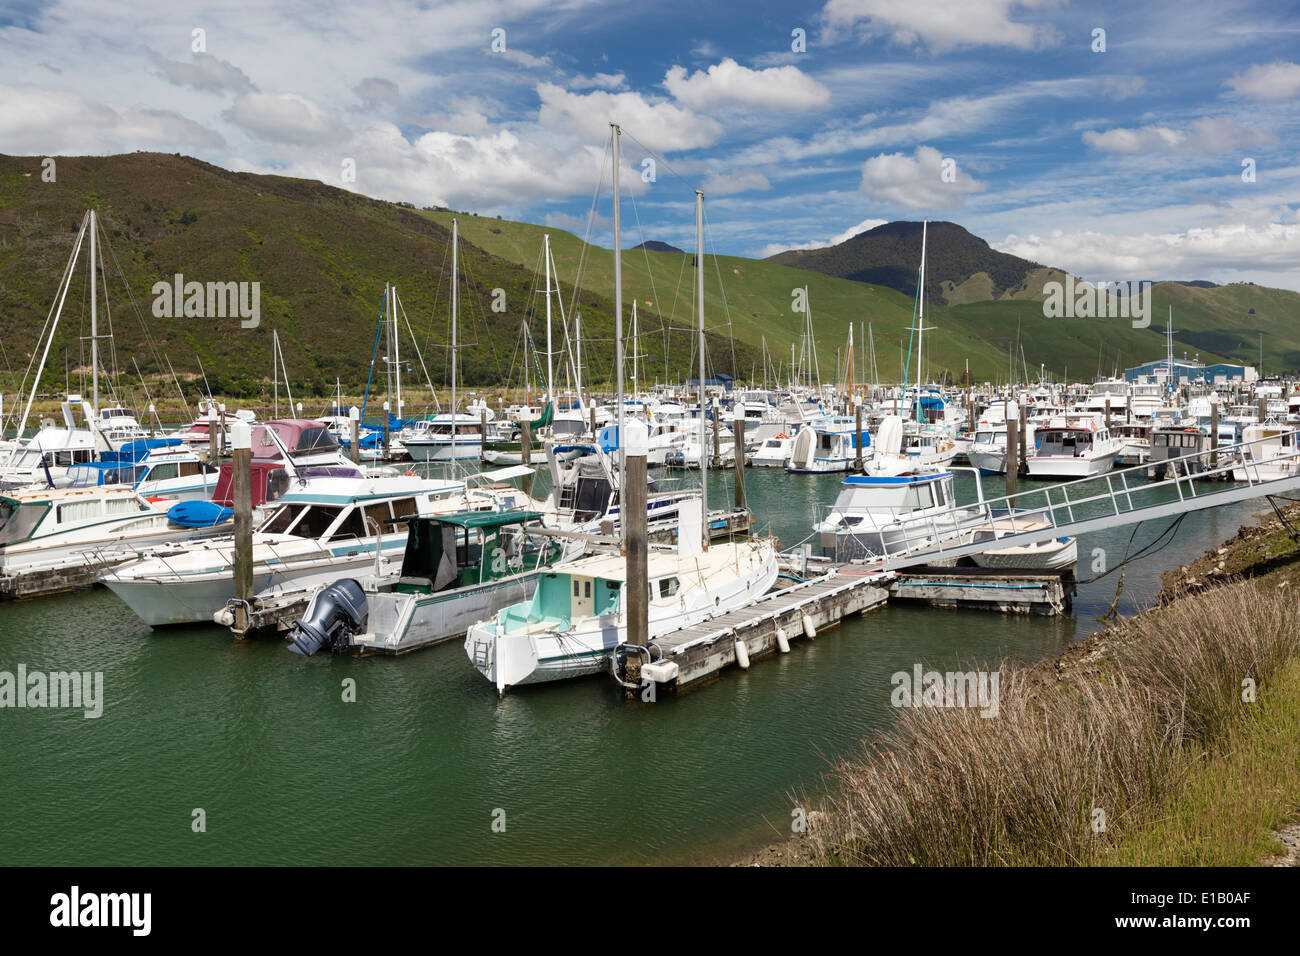 Havelock marina, Havelock, regione di Marlborough, Isola del Sud, Nuova Zelanda e Sud Pacifico Foto Stock